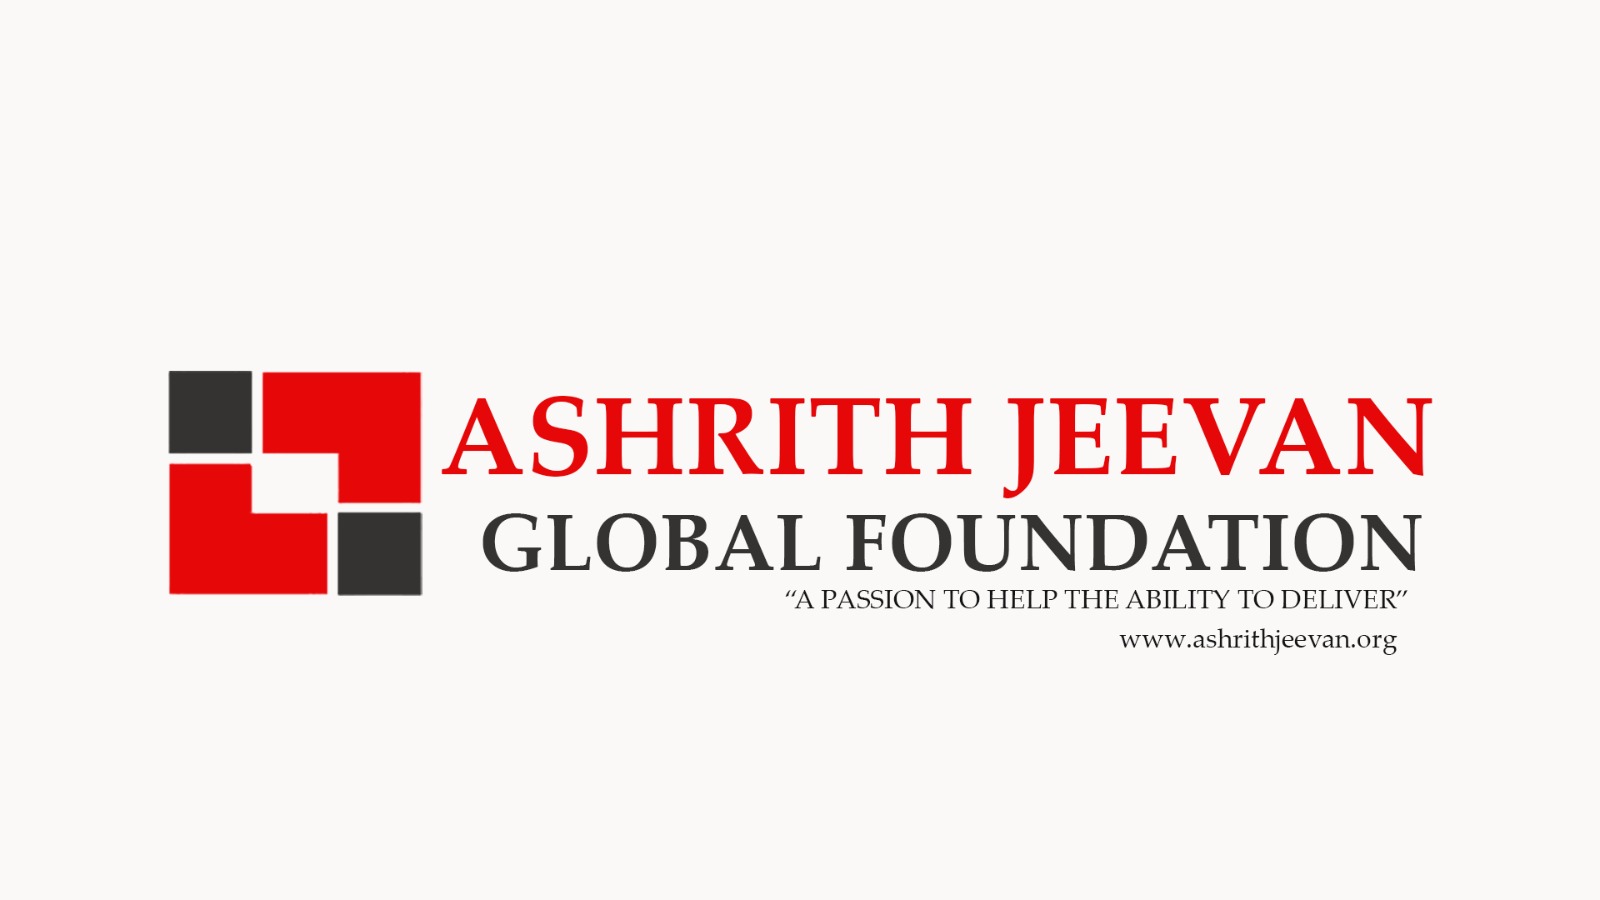 Ashrith Jeevan Global Foundation